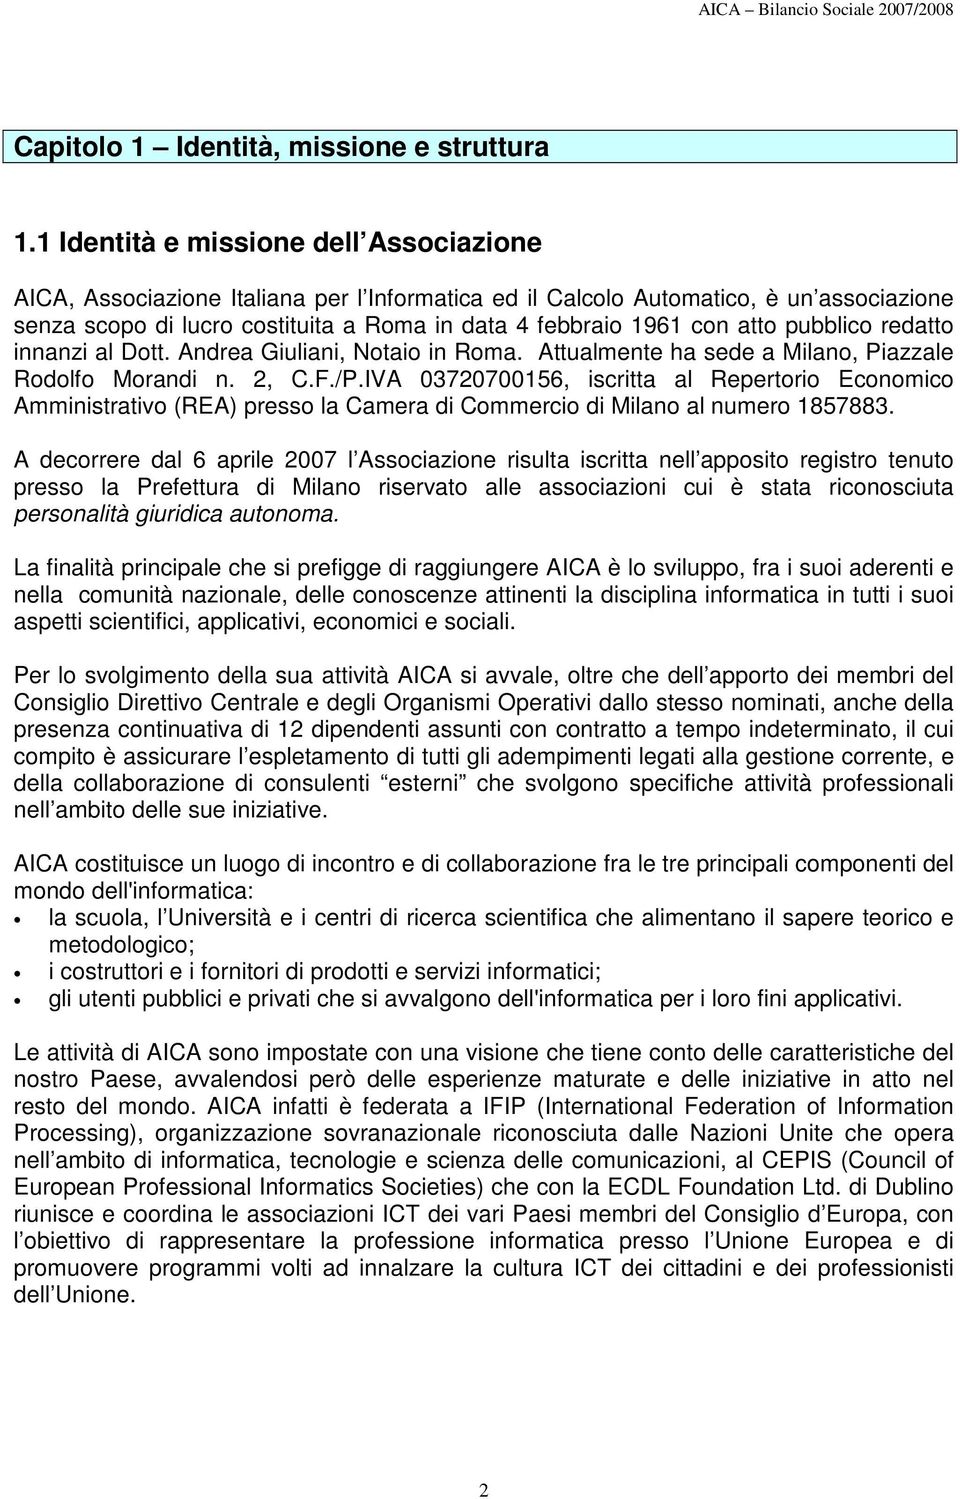 atto pubblico redatto innanzi al Dott. Andrea Giuliani, Notaio in Roma. Attualmente ha sede a Milano, Piazzale Rodolfo Morandi n. 2, C.F./P.